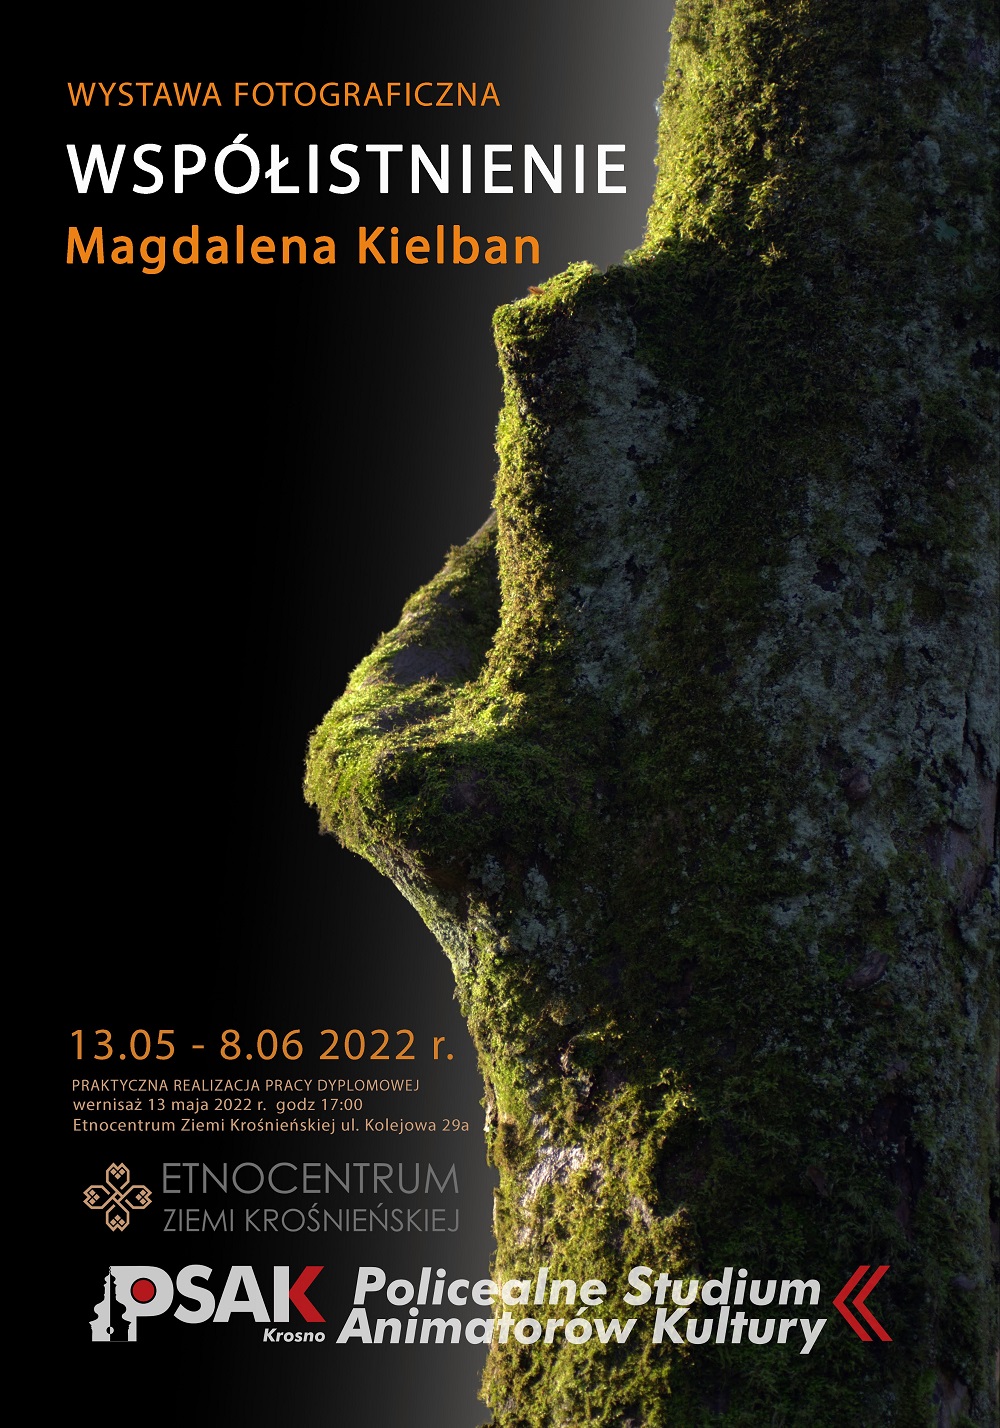 Plakat informujący o wystawie Magdaleny Kielban. Przestawia oświetloną korę drzewa porośniętego zielonym mchem 